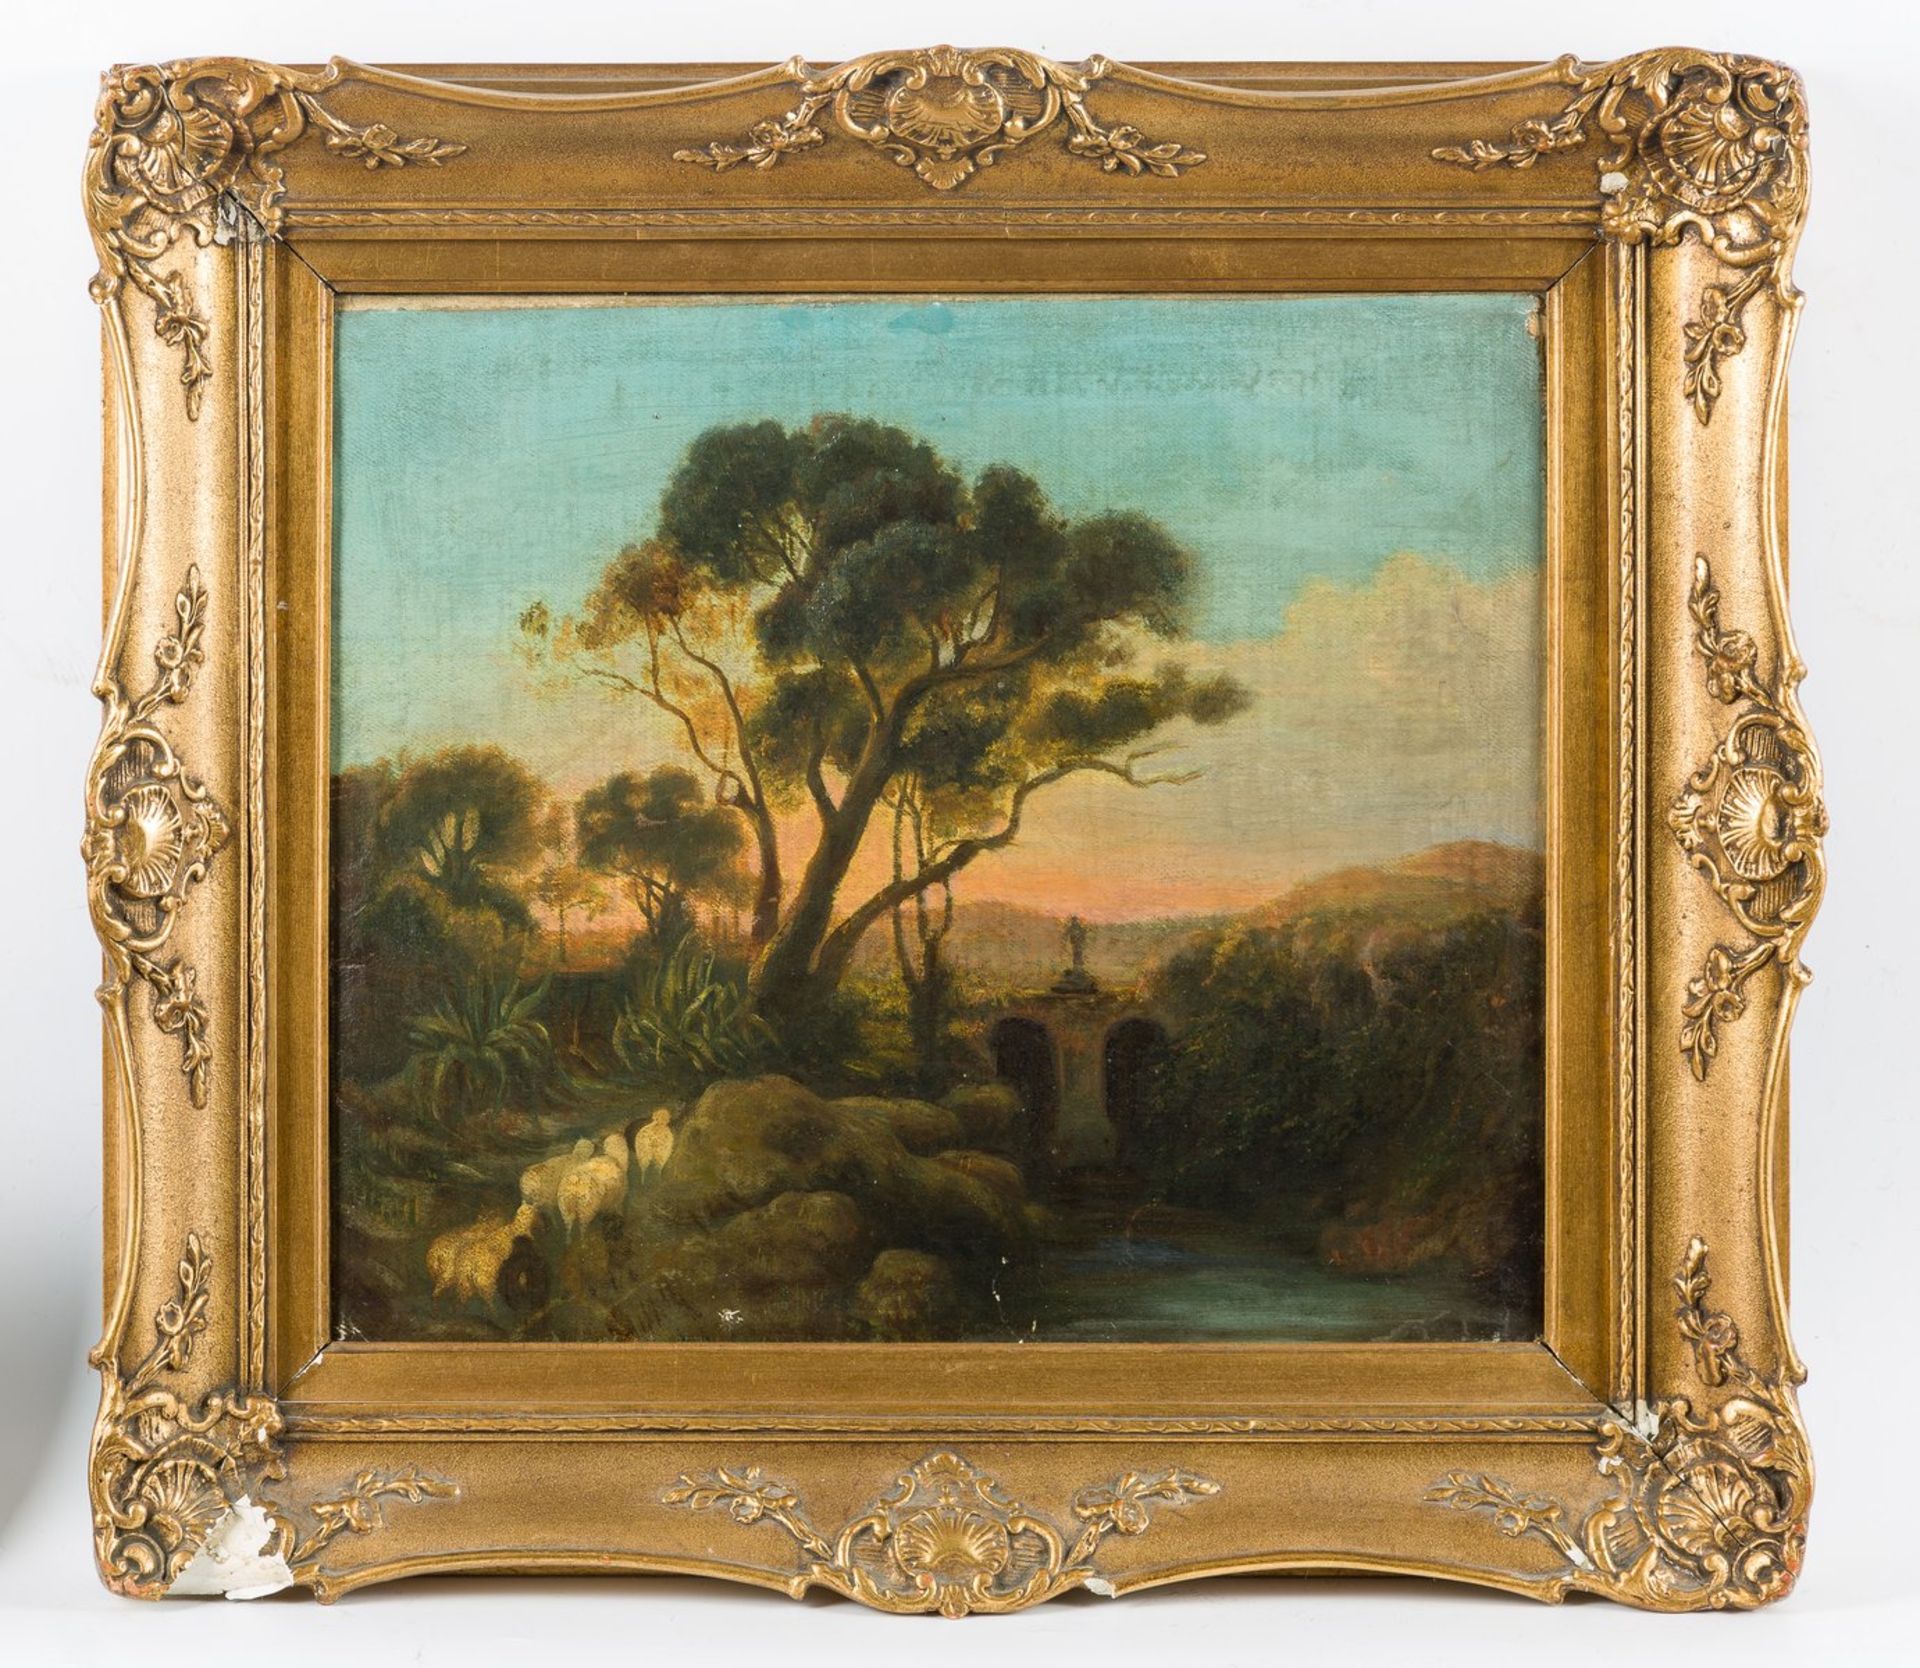 Italienischer Maler (um 1800)Flusslandschaft in AbendstimmungLinks neben Aloe weidende Schafe.